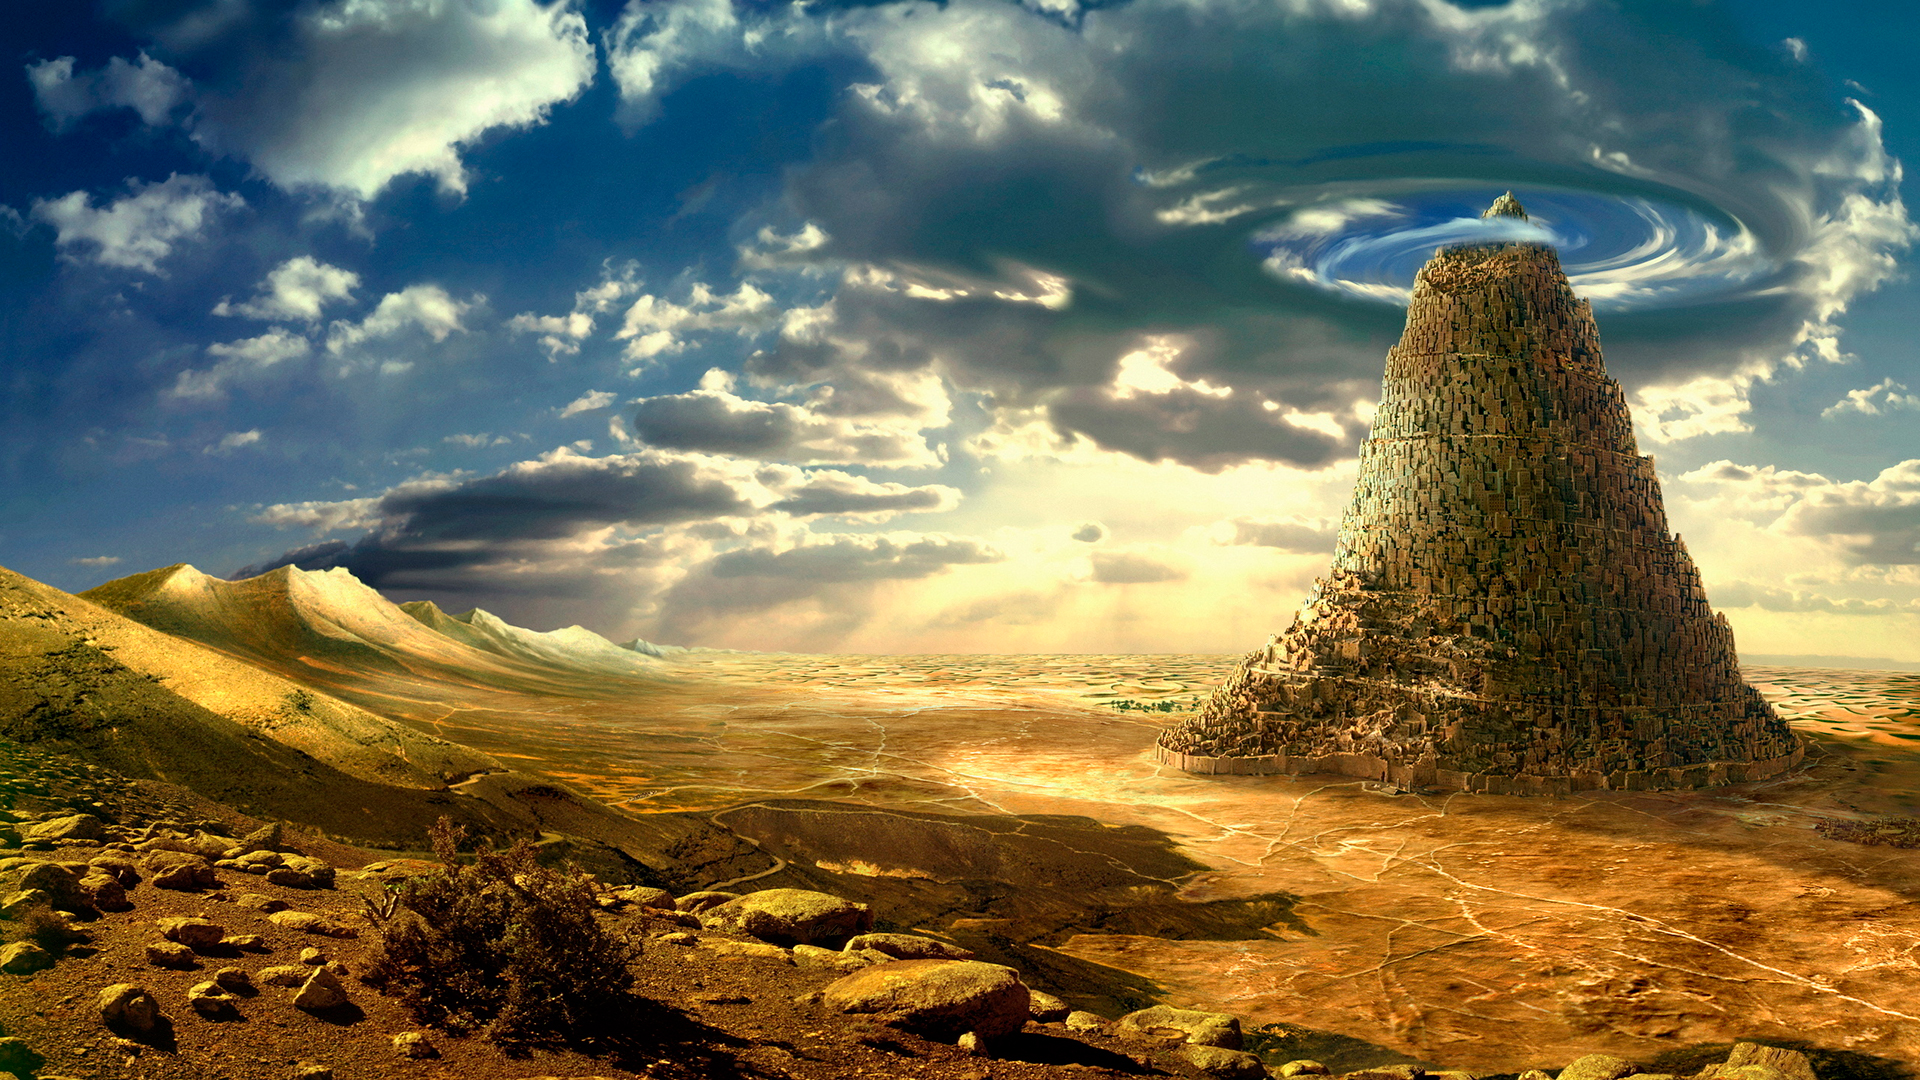 Fantasy Desert Landscape Wallpaper - Themes10.win